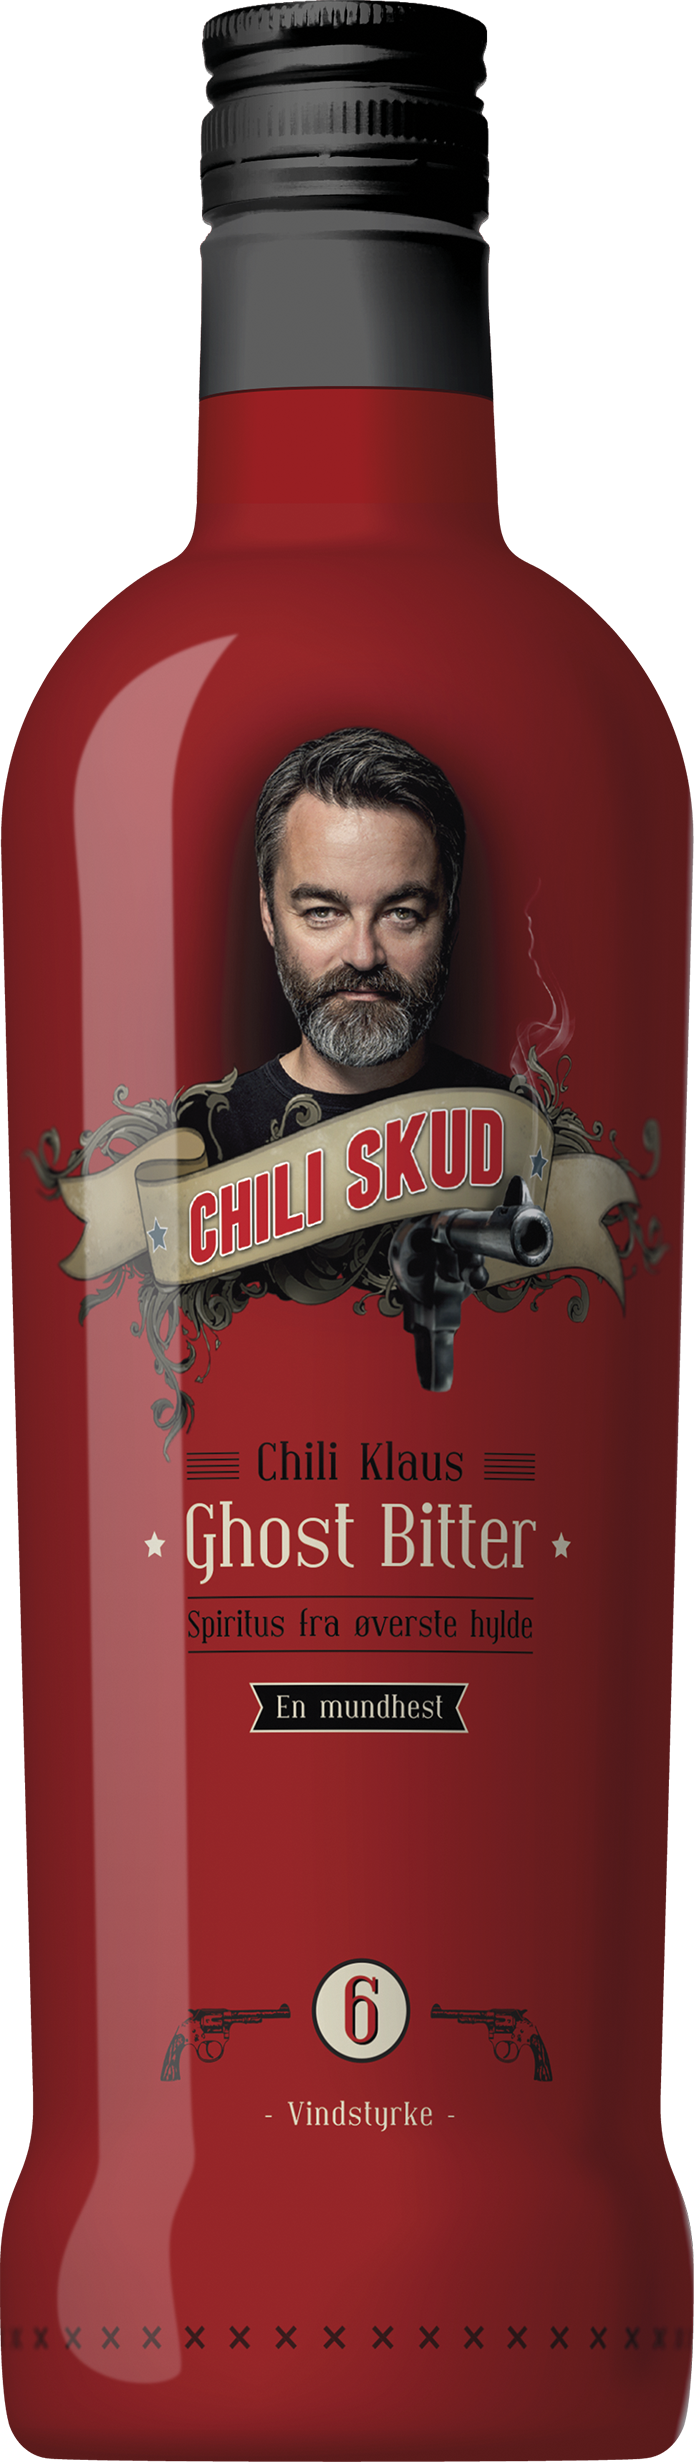 Blænding mod Strålende Chili Klaus Chili Skud Ghost Bitter Vindstyrke 6, 70 cl. - 20% - SHOTS -  VIN MED MERE .DK